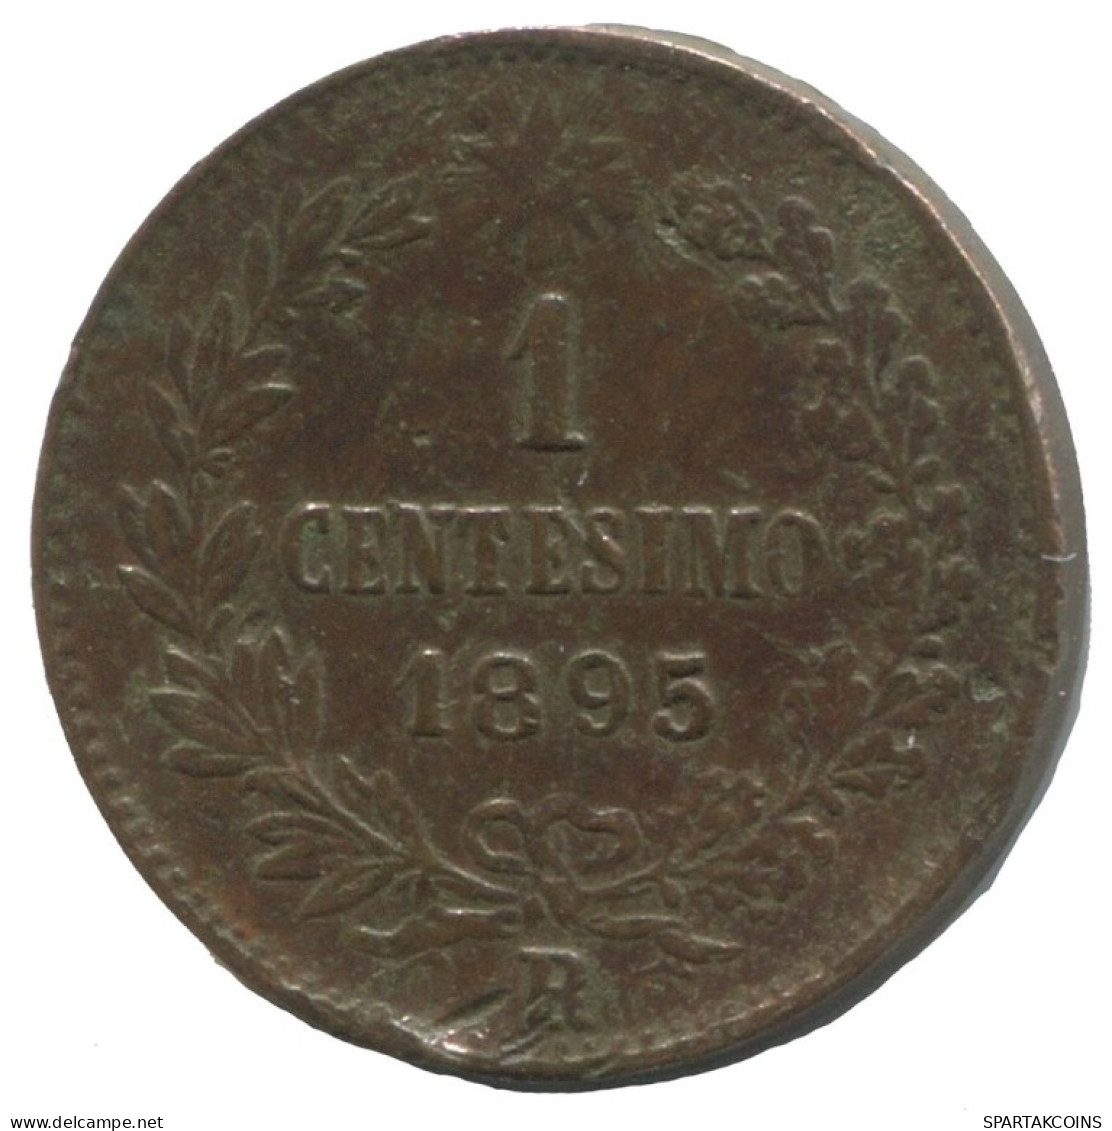 ITALY 1 Centesimo 1895 R Umberto I #AC186.8.F.A - Parme